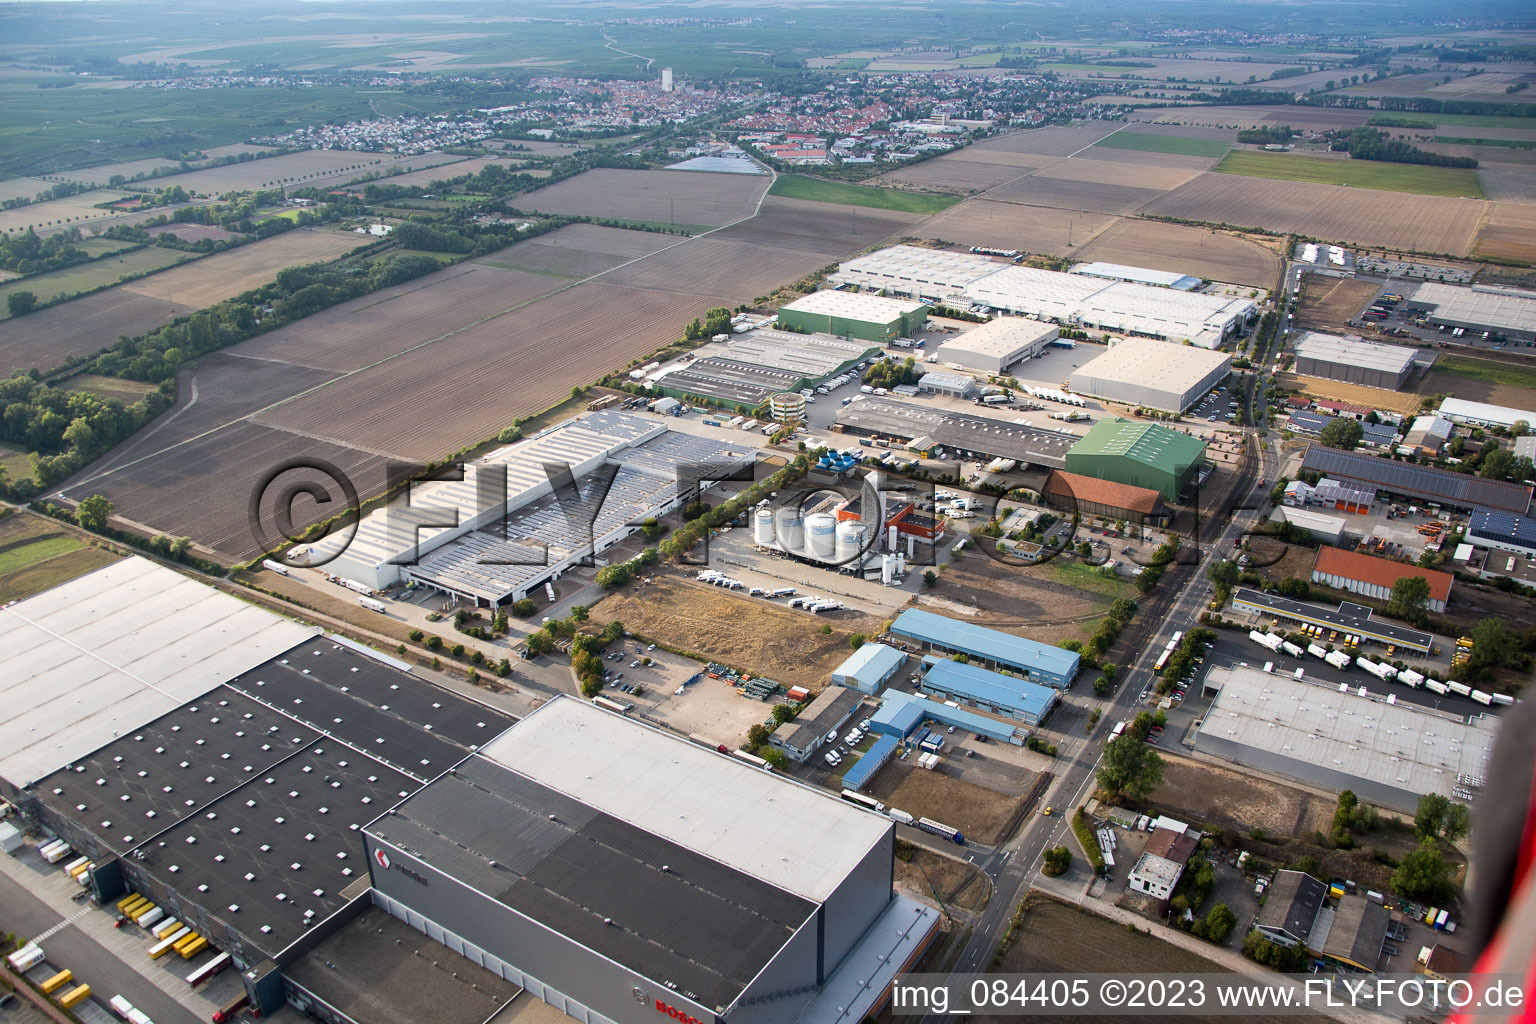 Luftbild von Bosch im Ortsteil Rheindürkheim in Worms im Bundesland Rheinland-Pfalz, Deutschland